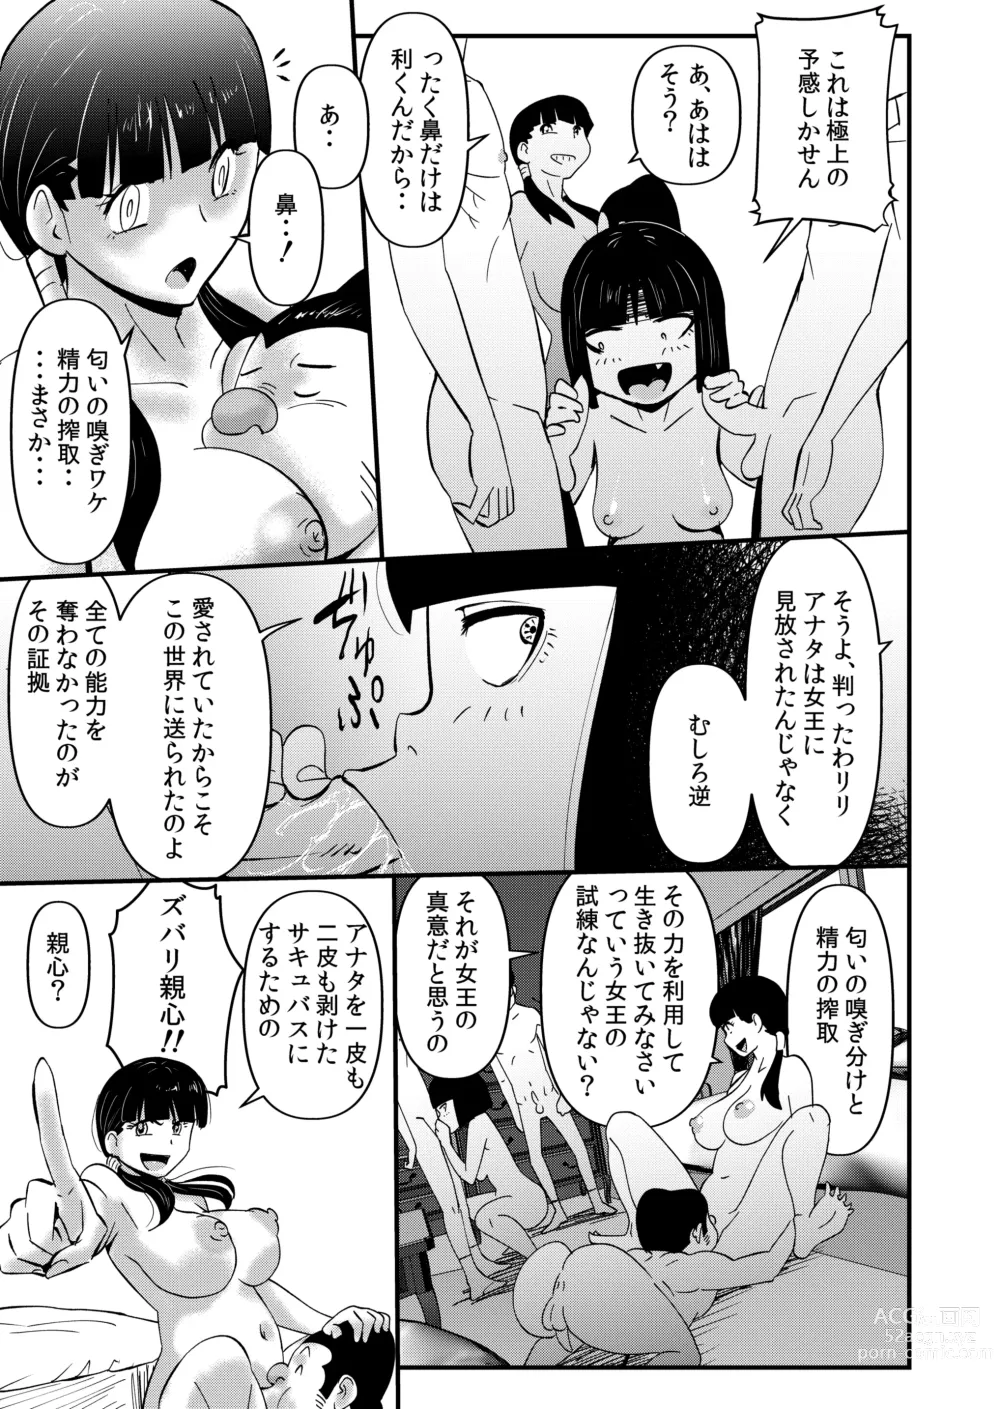 Page 29 of doujinshi Inma JK Succubus no Yabou